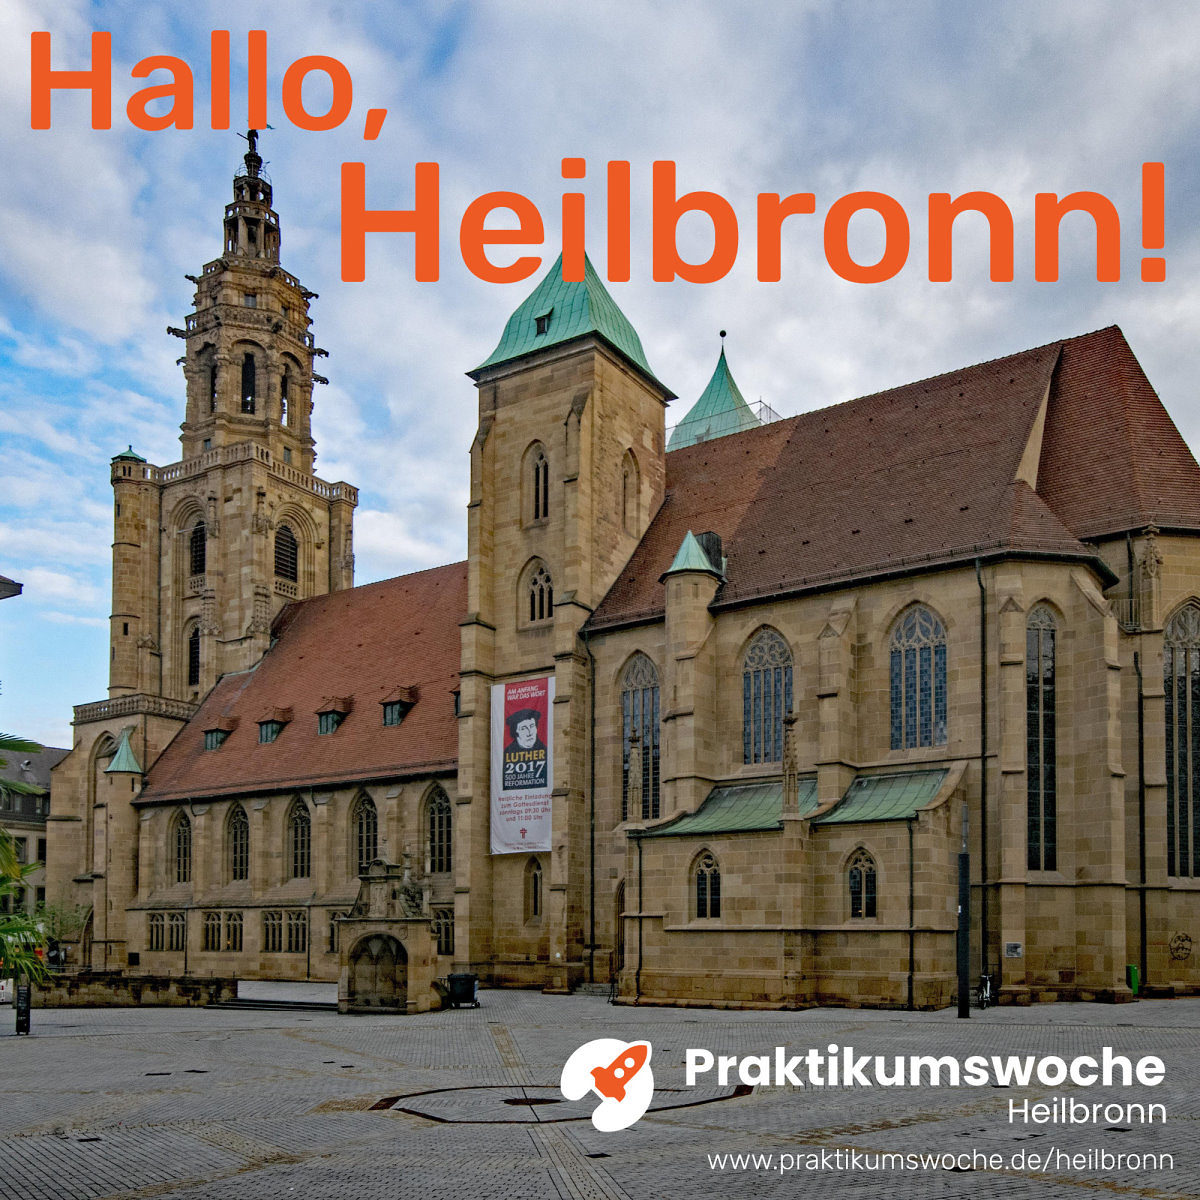 Kilianskirche und -platz in Heilbronn, oben oranger Schriftzug Hallo, Heilbronn unten in weiß Logo Praktikumswoche und URL